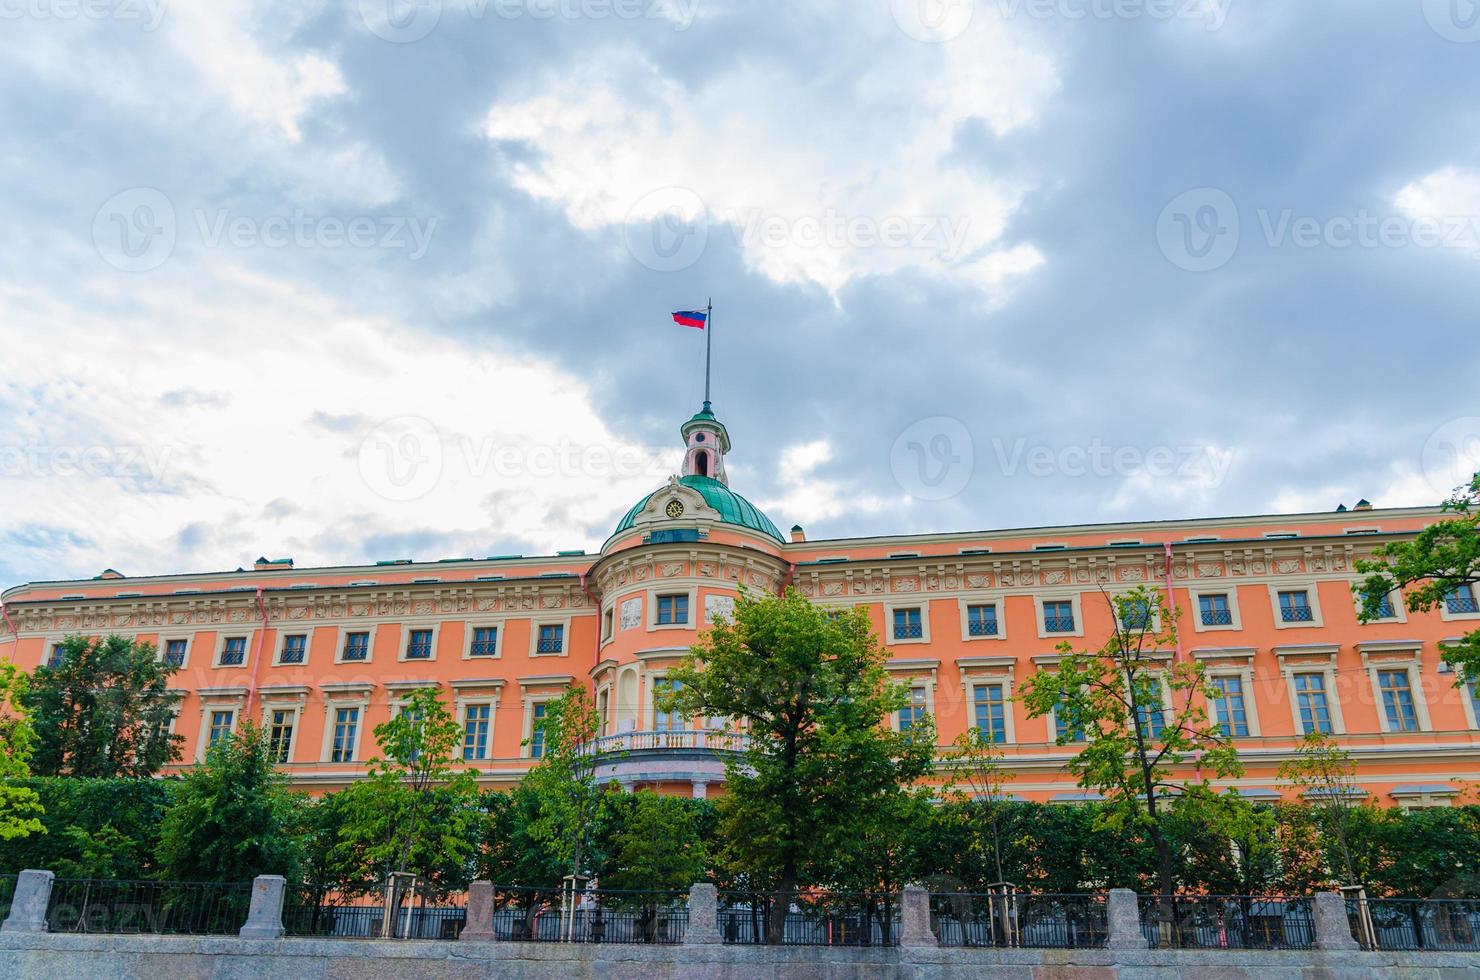 mikhailovskykasteel met Russische vlag bovenop, blauwe dramatische hemelachtergrond, heilige petersburg foto